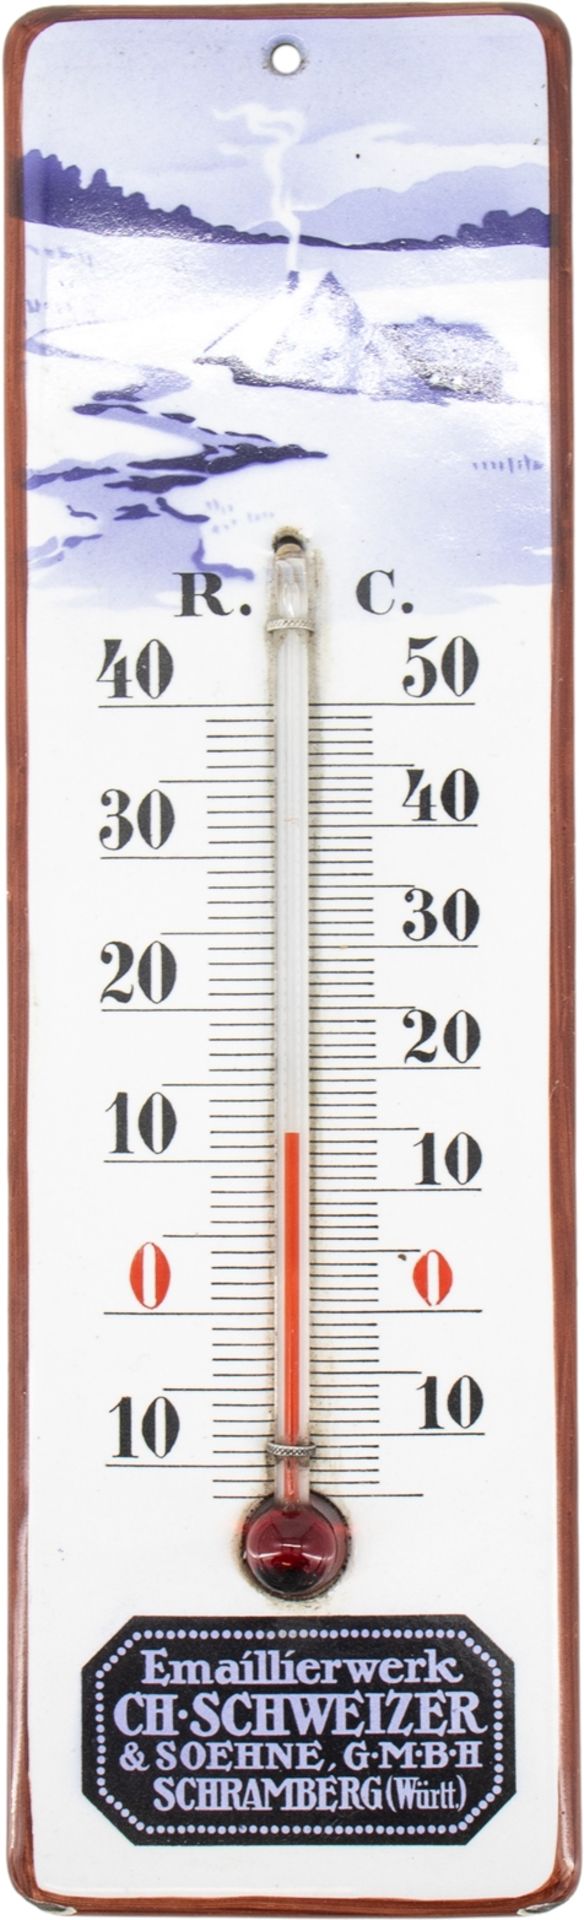 Enamel plate thermometer, Schramberger Emaillierwerke, Schweizer & Söhne, around 1930